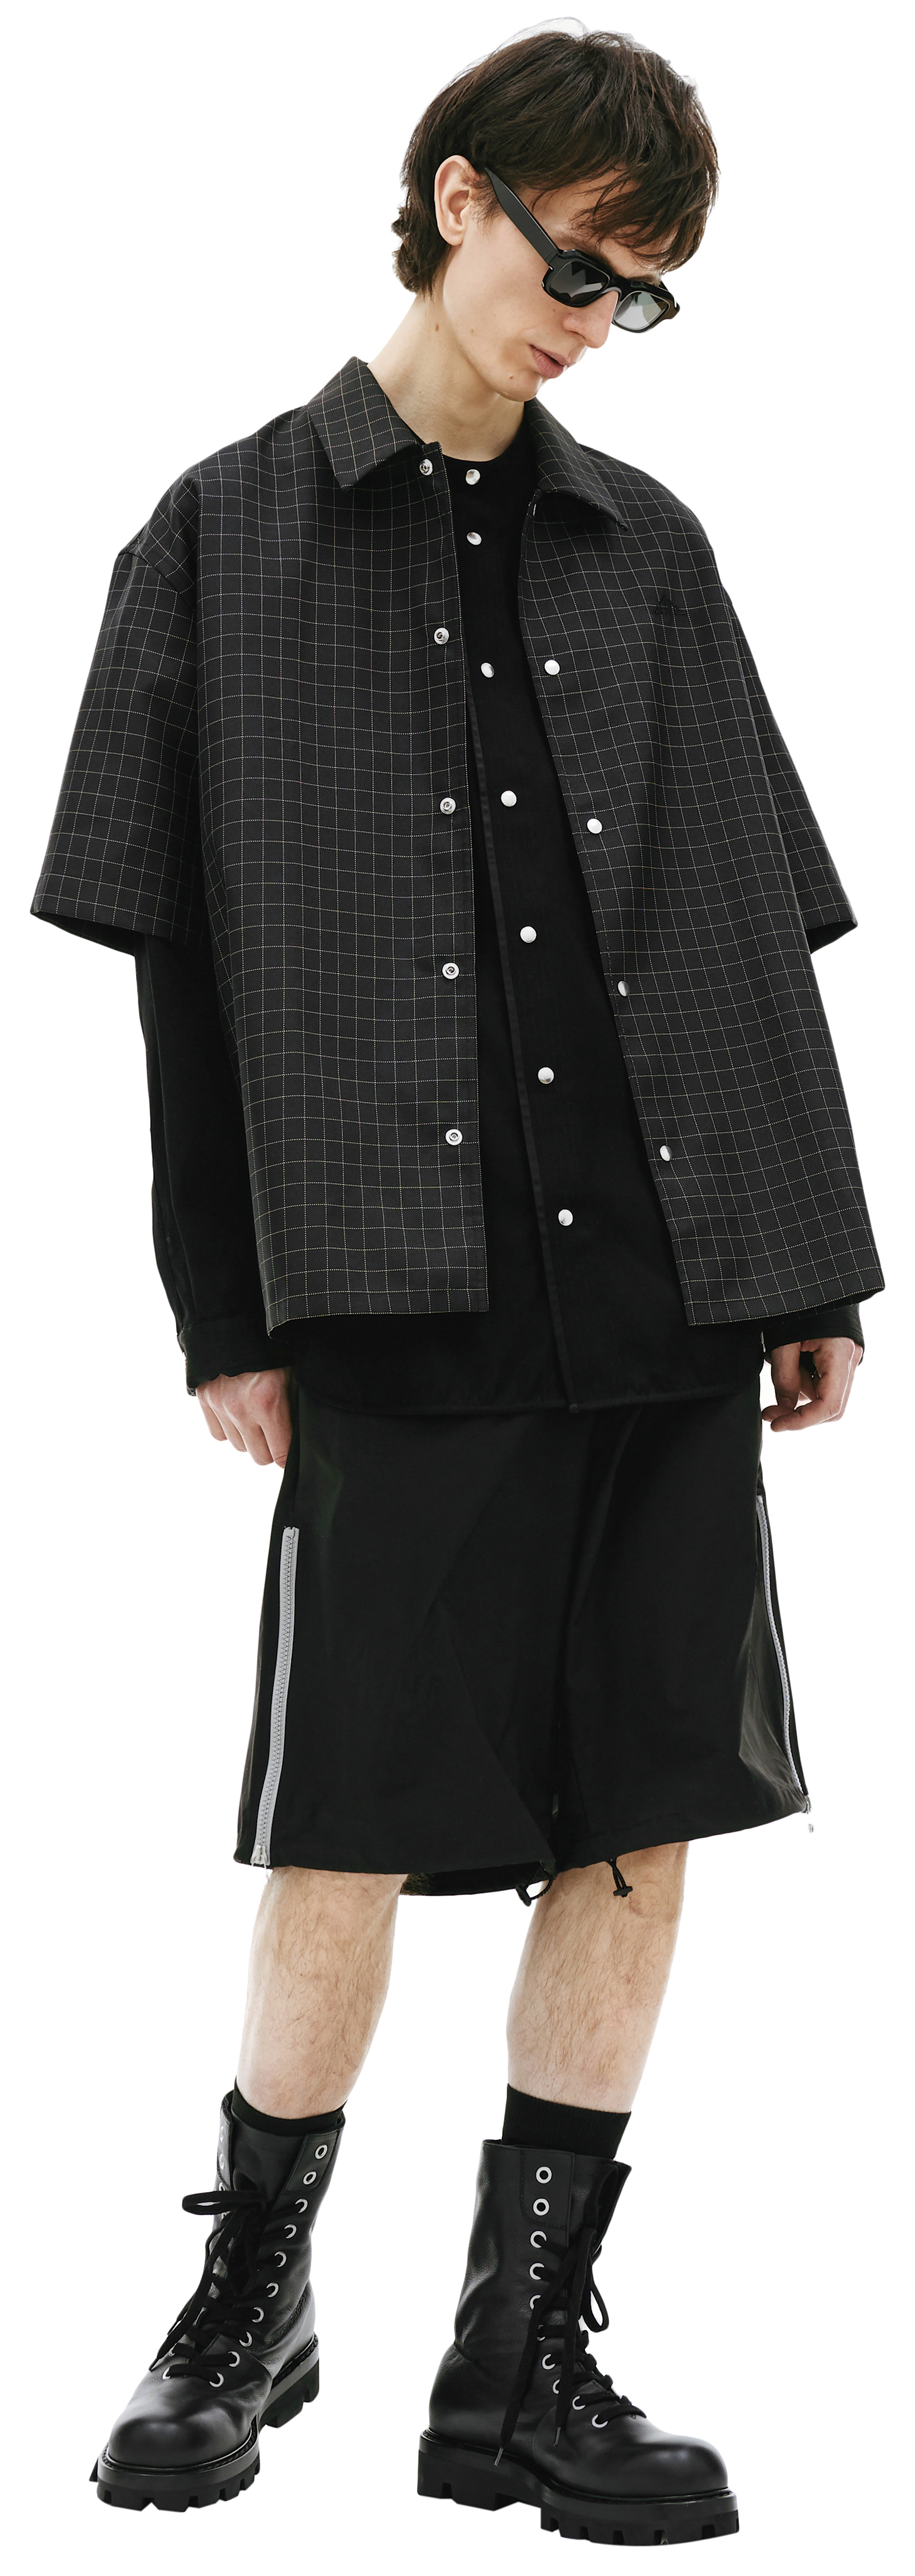 Buy OAMC men black checkered shirt for $850 online on SV77 